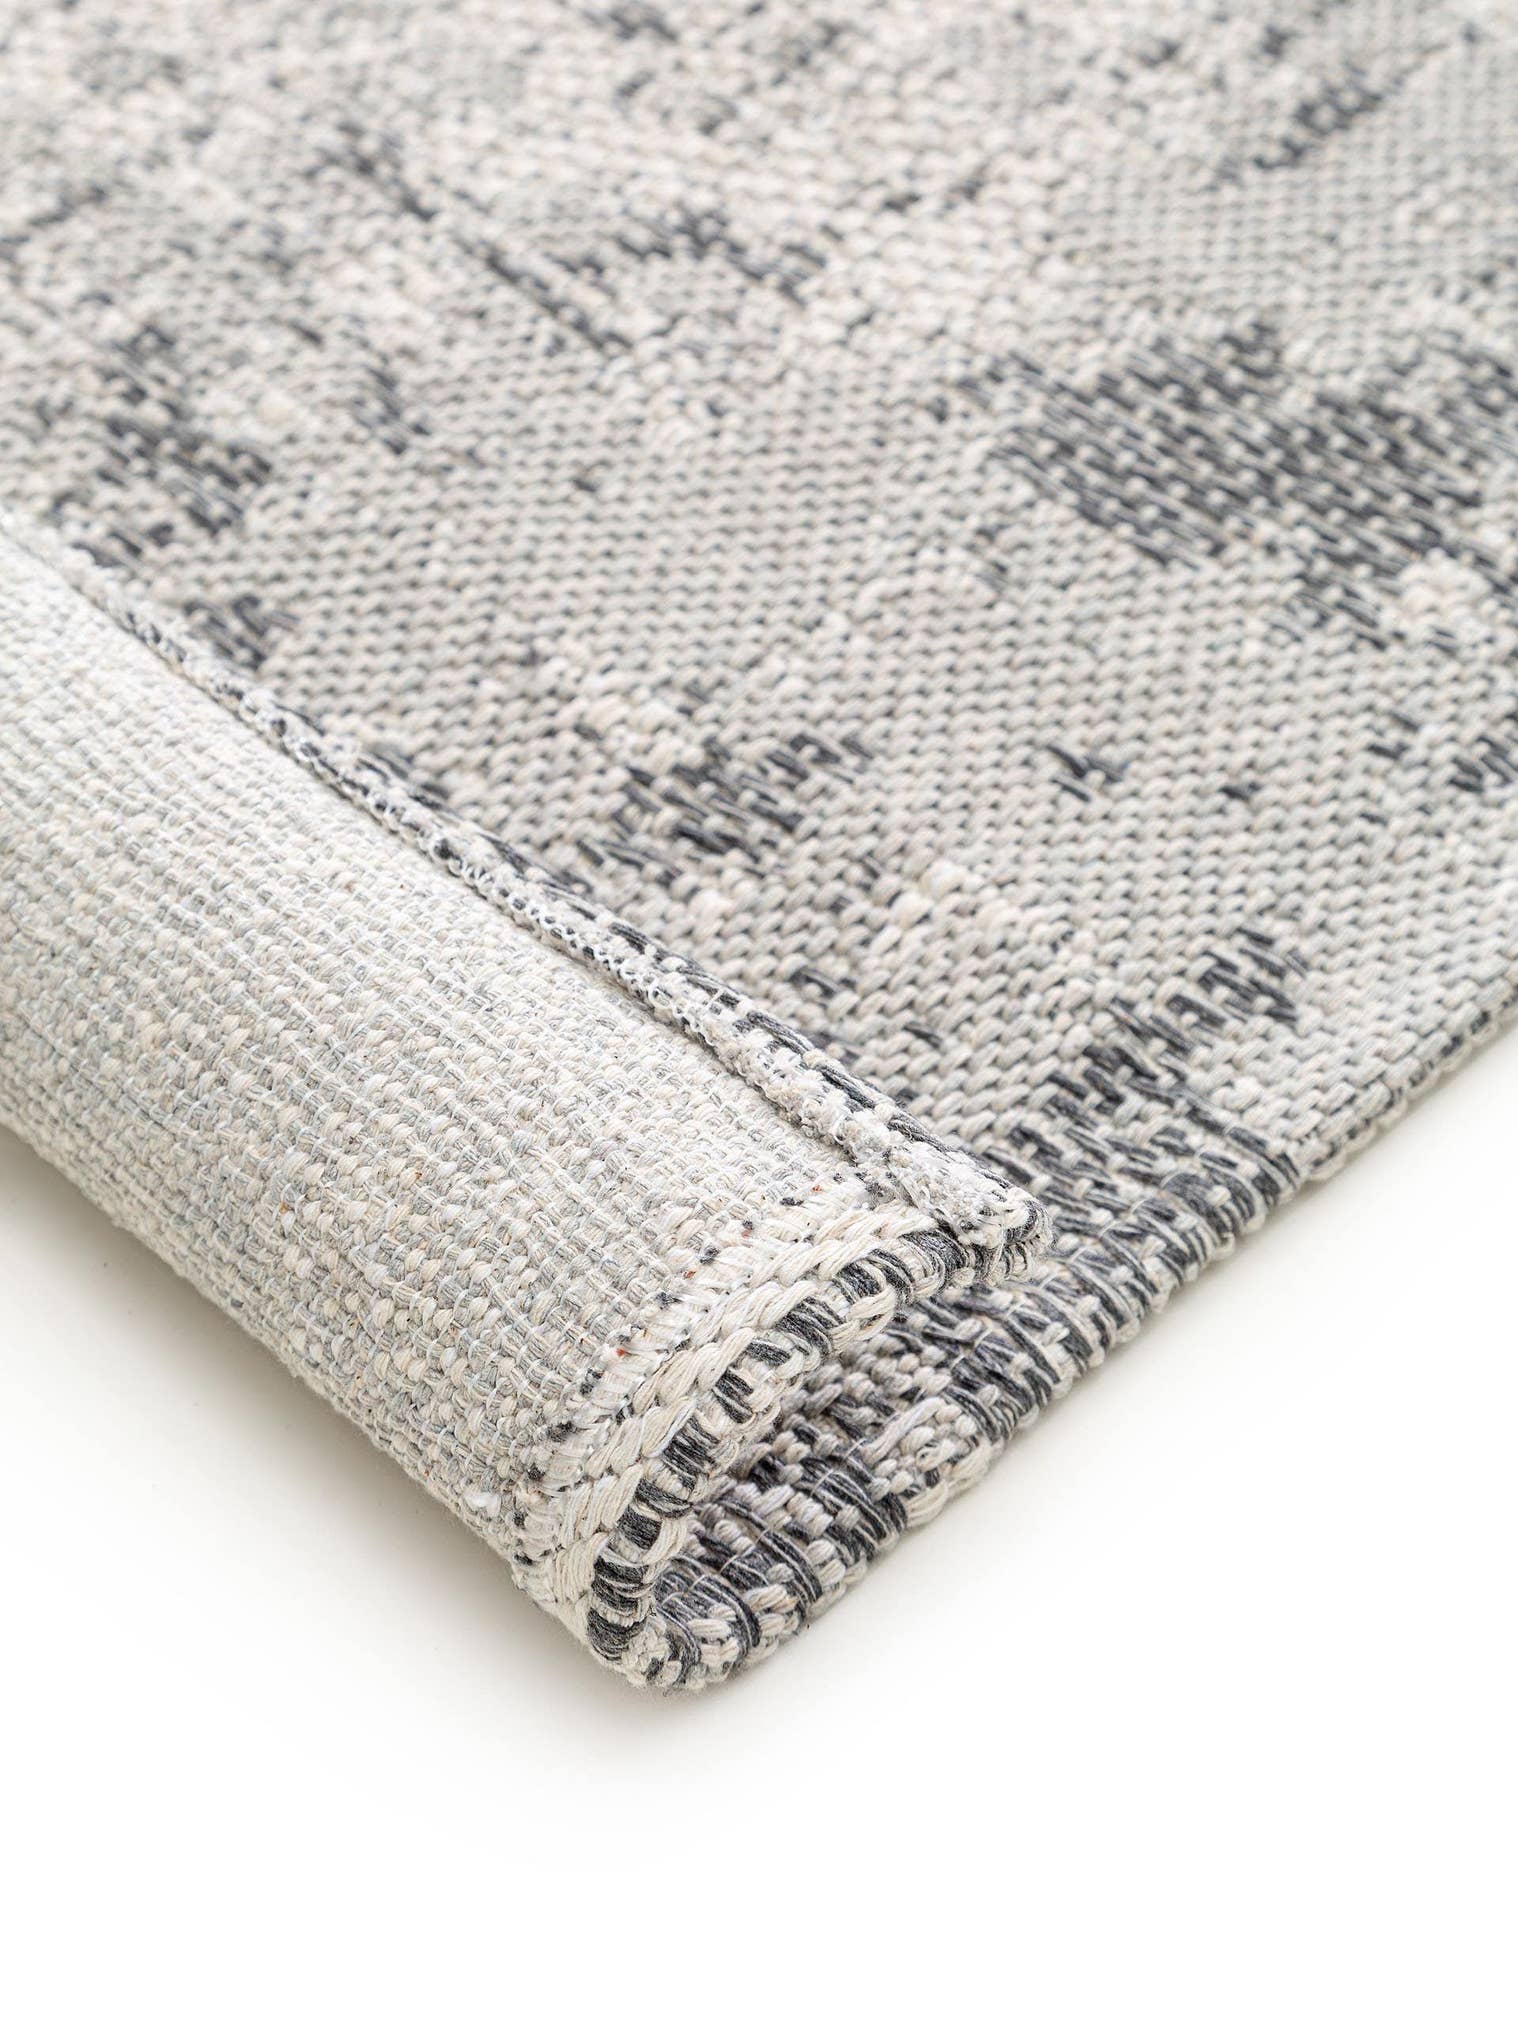 Teppich aus 100% Baumwolle in Grau mit bis 5 mm hohem Flor von benuta Nest